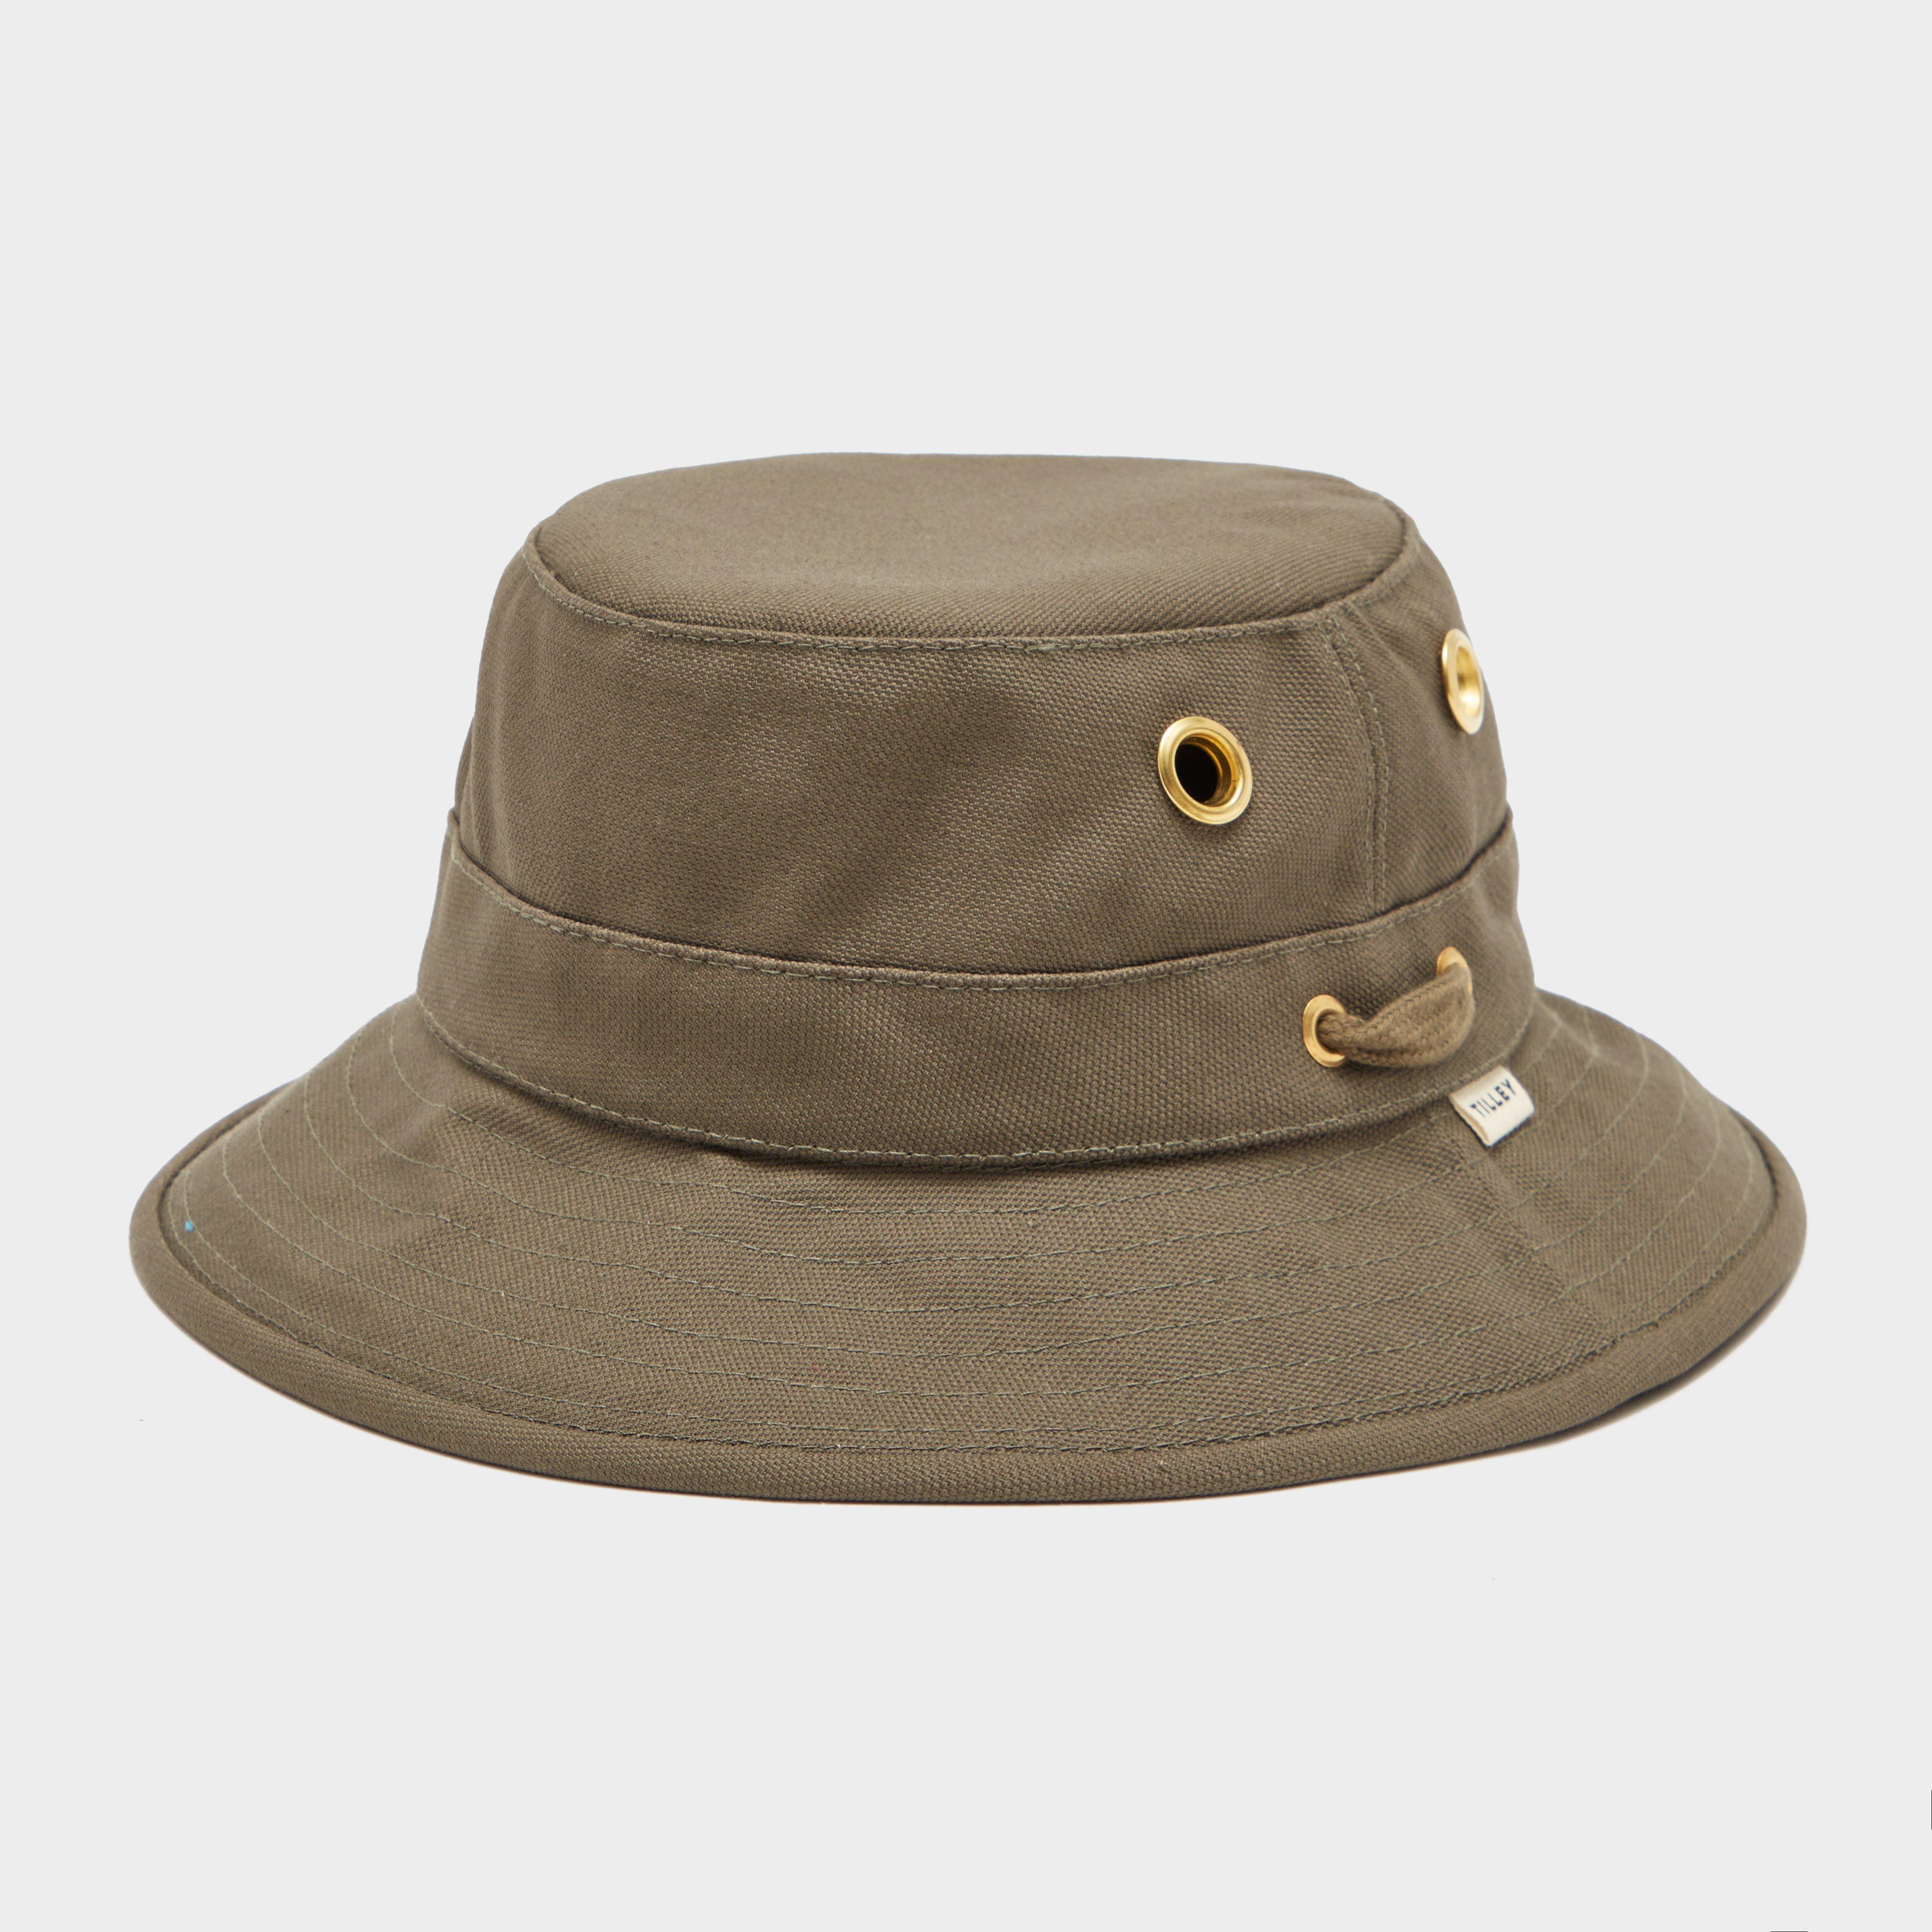  Tilley Unisex T1 Bucket Hat, Khaki